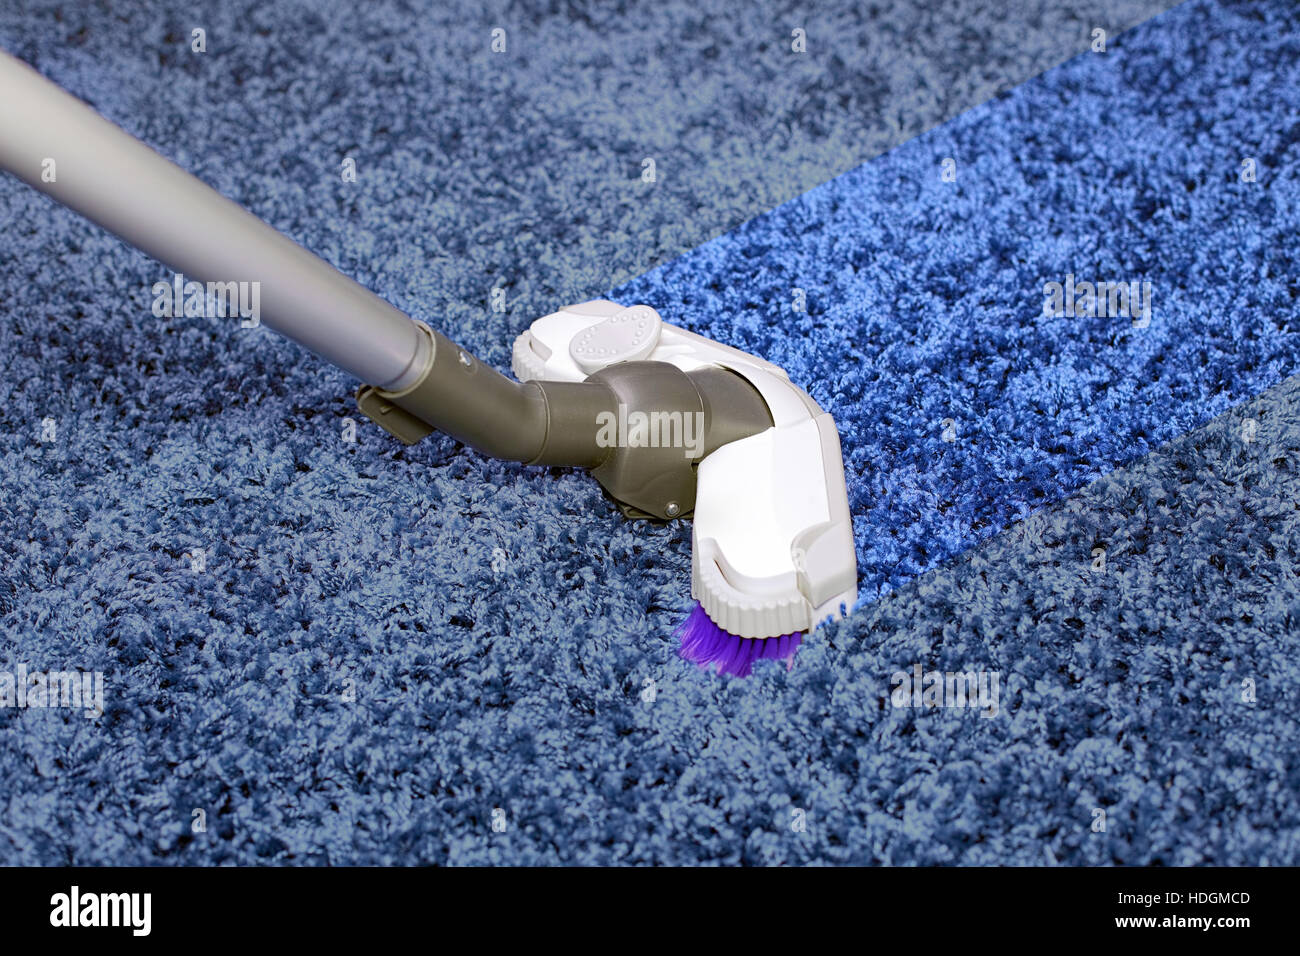 Le tuyau métallique de l'aspirateur en action - nettoyage de bande sur le tapis. Banque D'Images